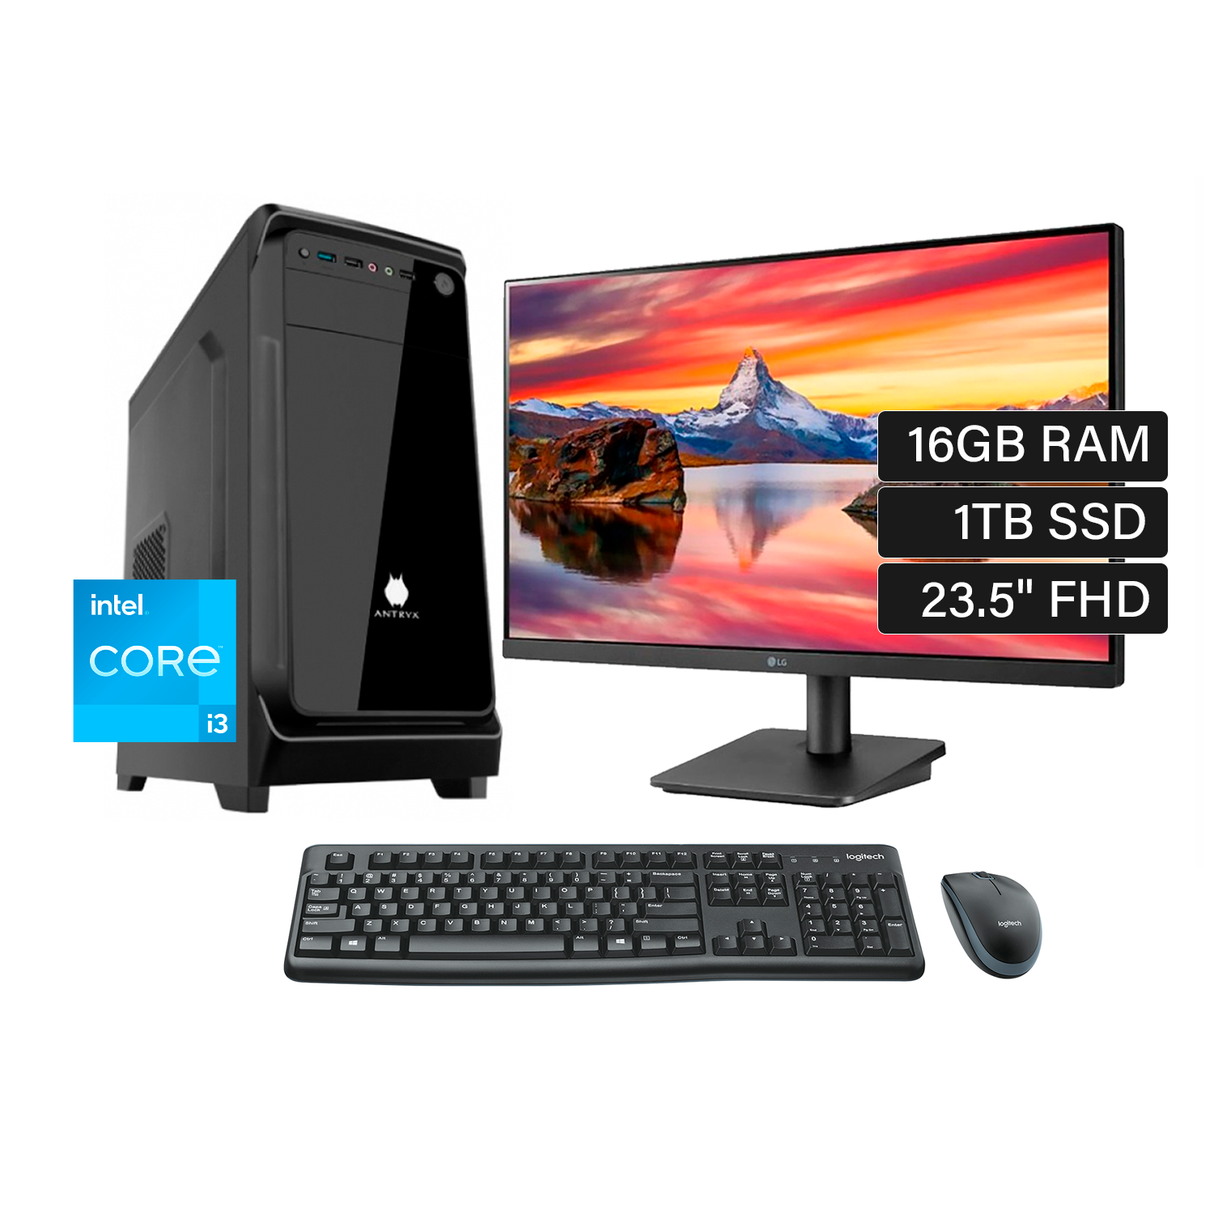 PC de Escritorio Intel Ci3 12100 (Gen 12) RAM 16GB Disco 1TB SSD Monitor 23.5" + kit teclado y mouse